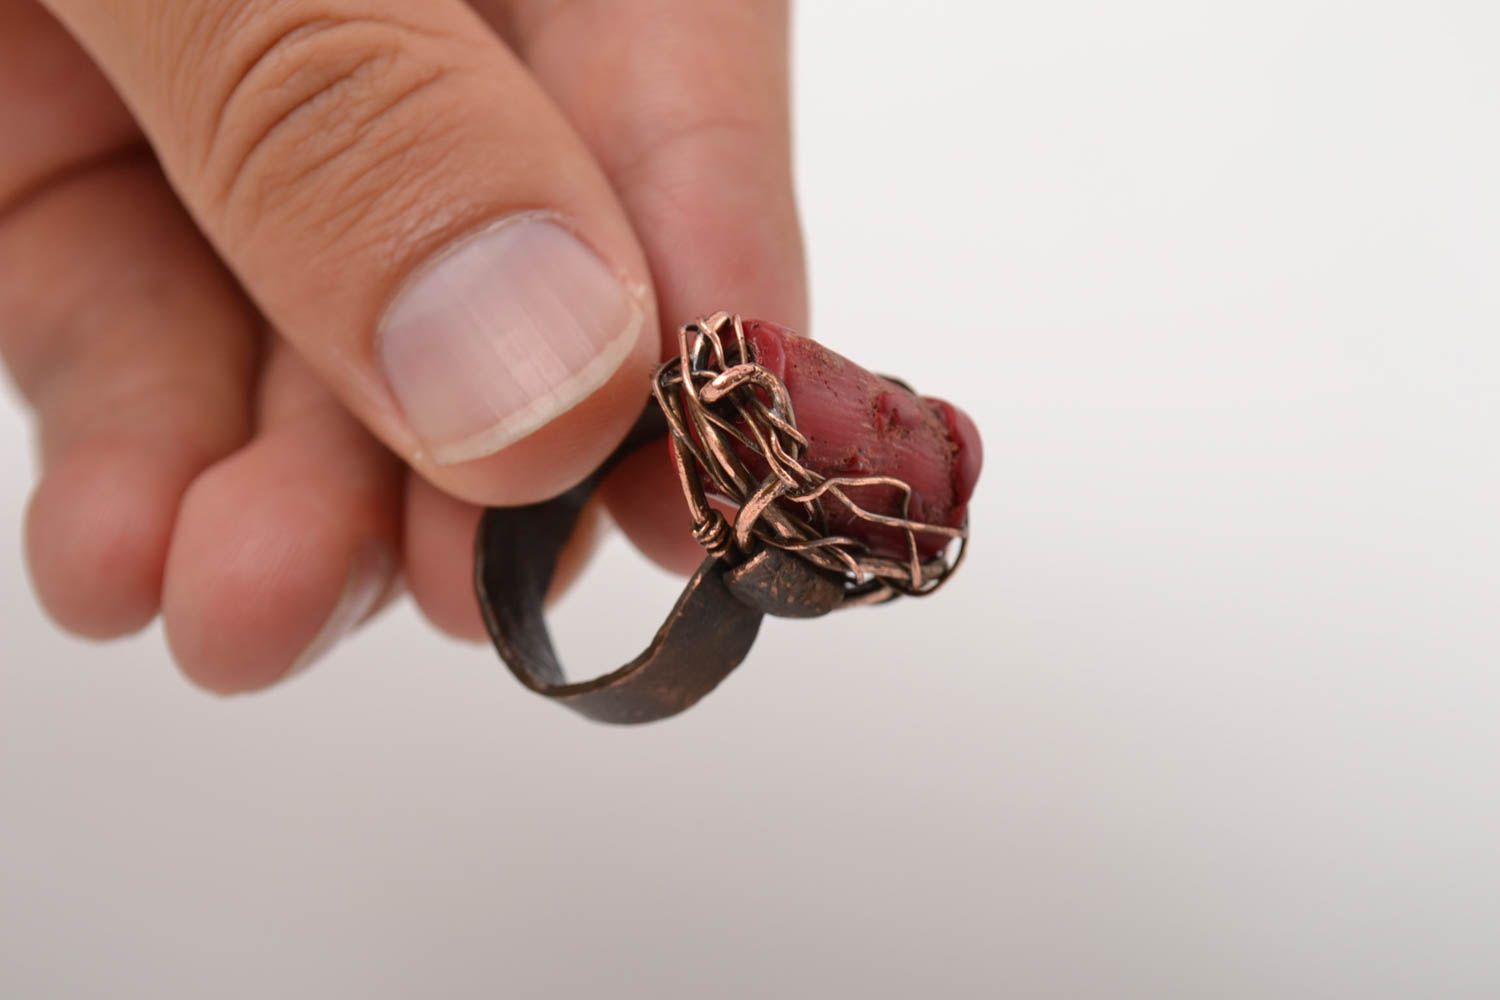 Красивое кольцо хэнд мэйд украшение в технике wire wrap медное кольцо с кораллом фото 5